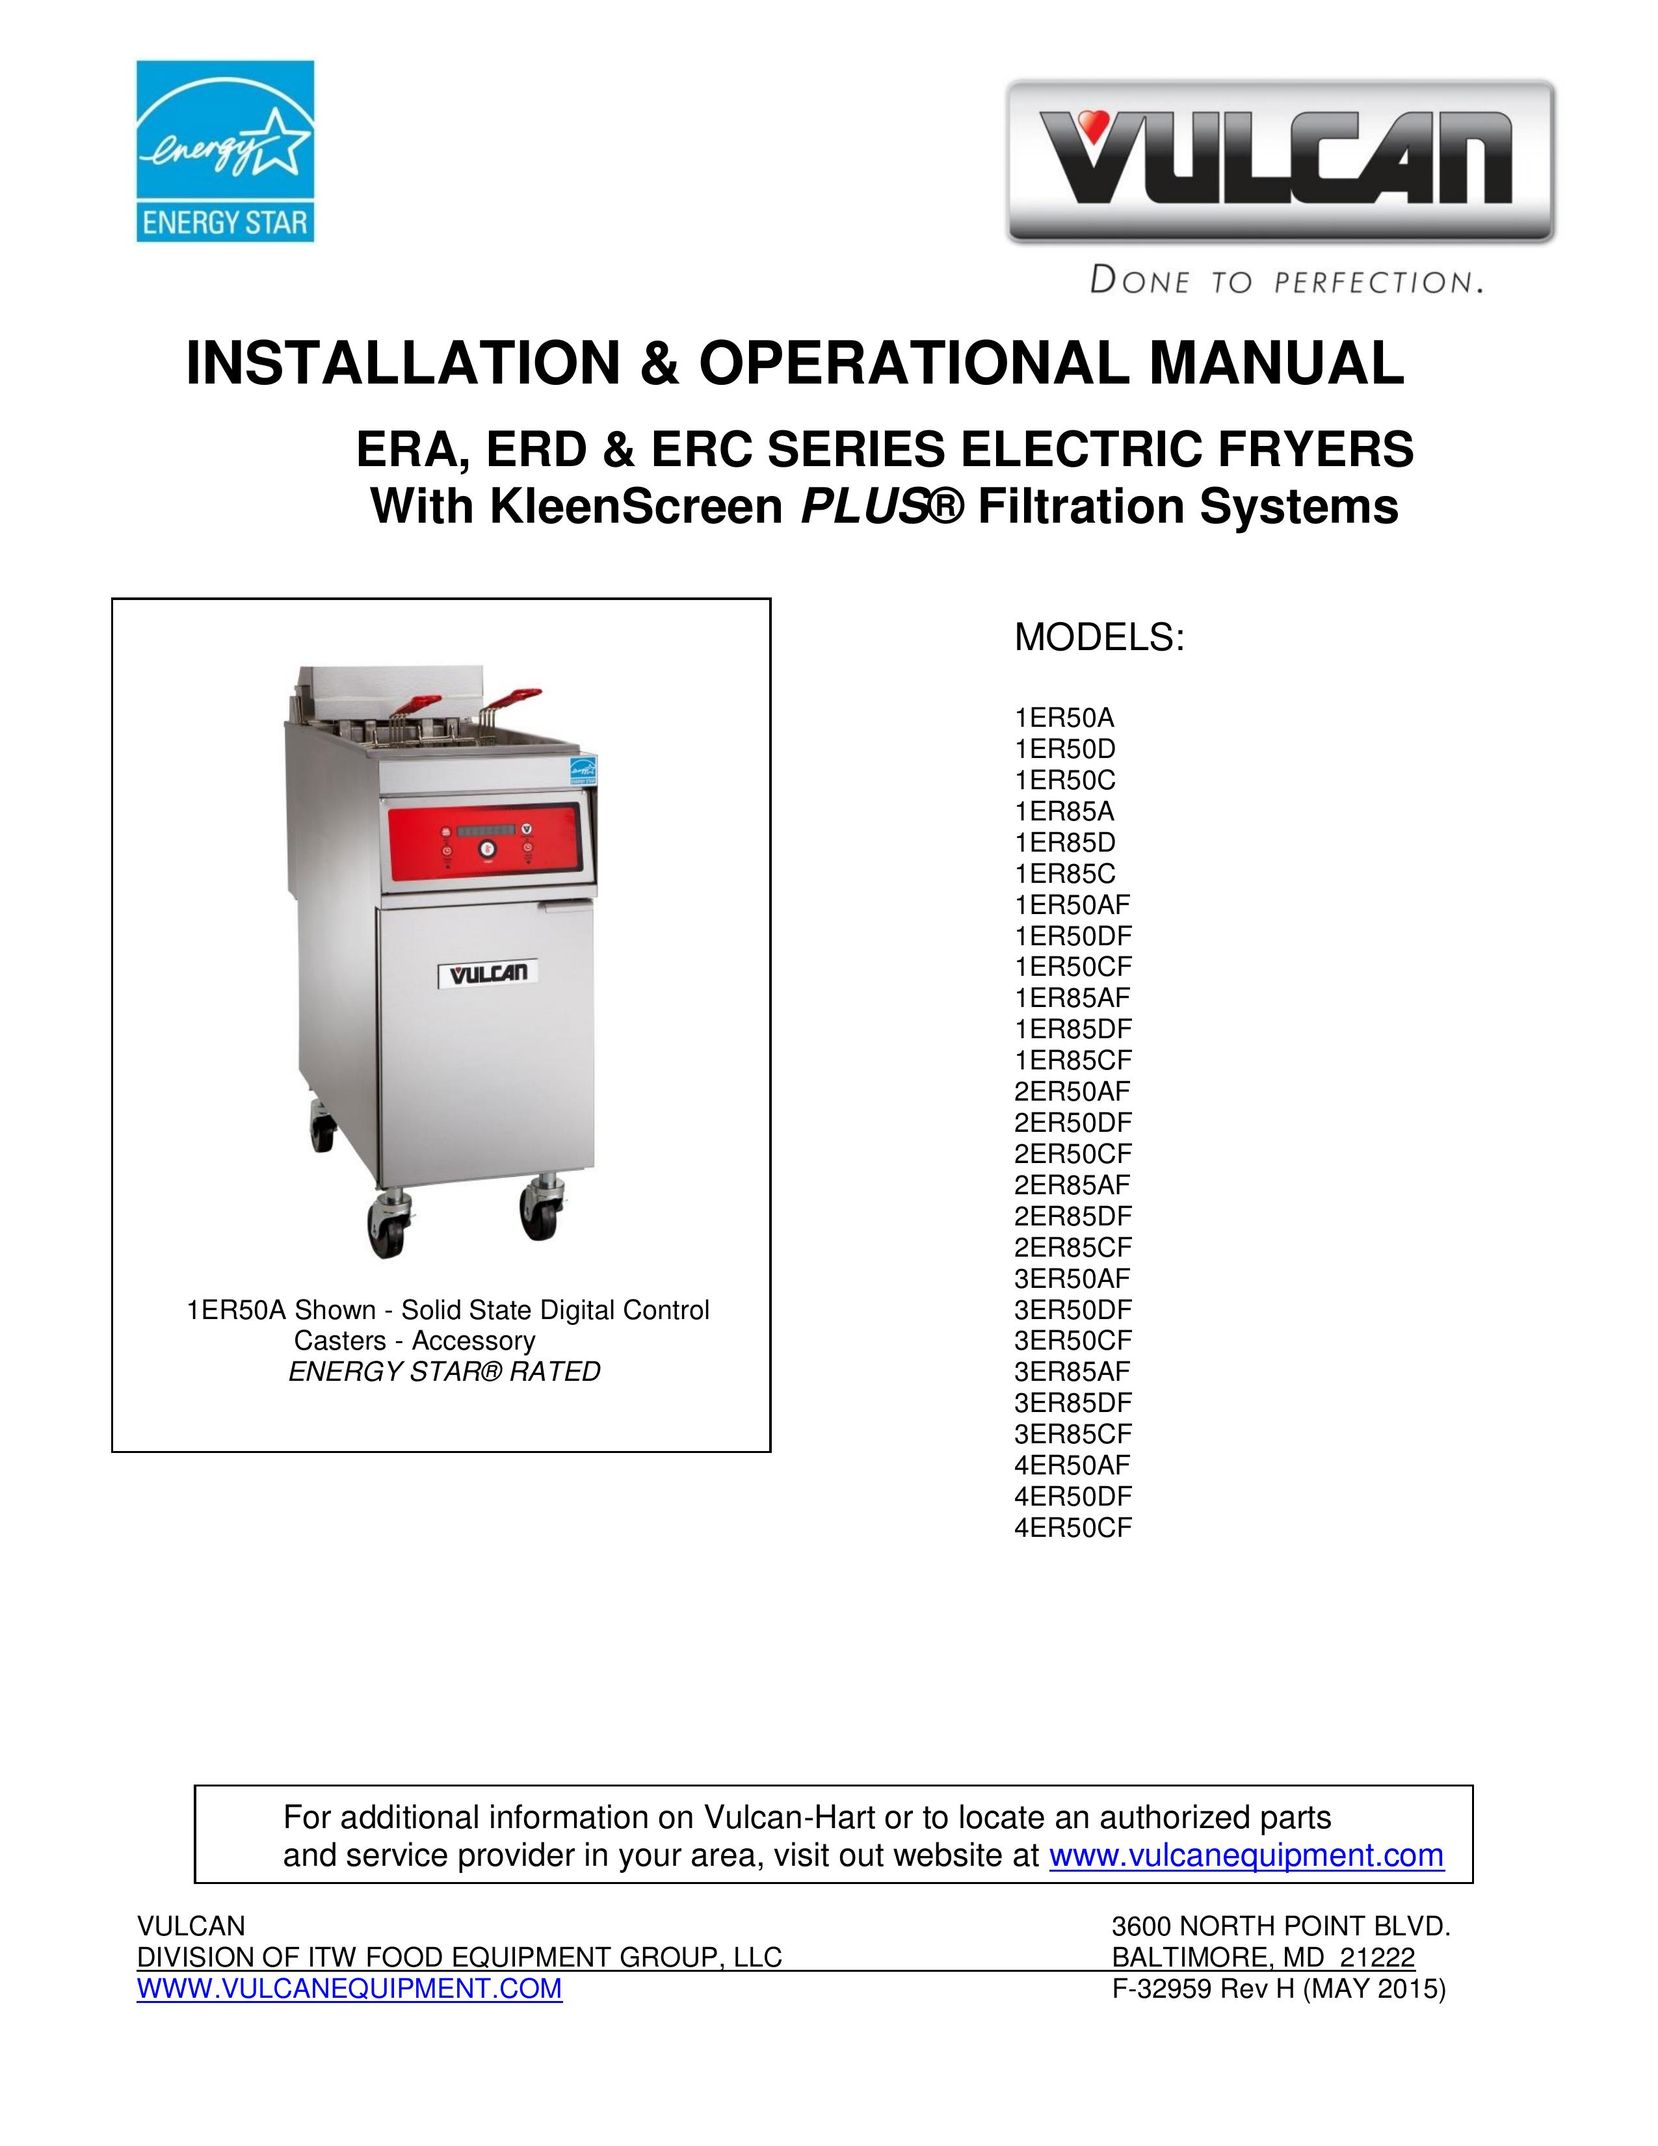 Vulcan-Hart 1ER50DF Fryer User Manual